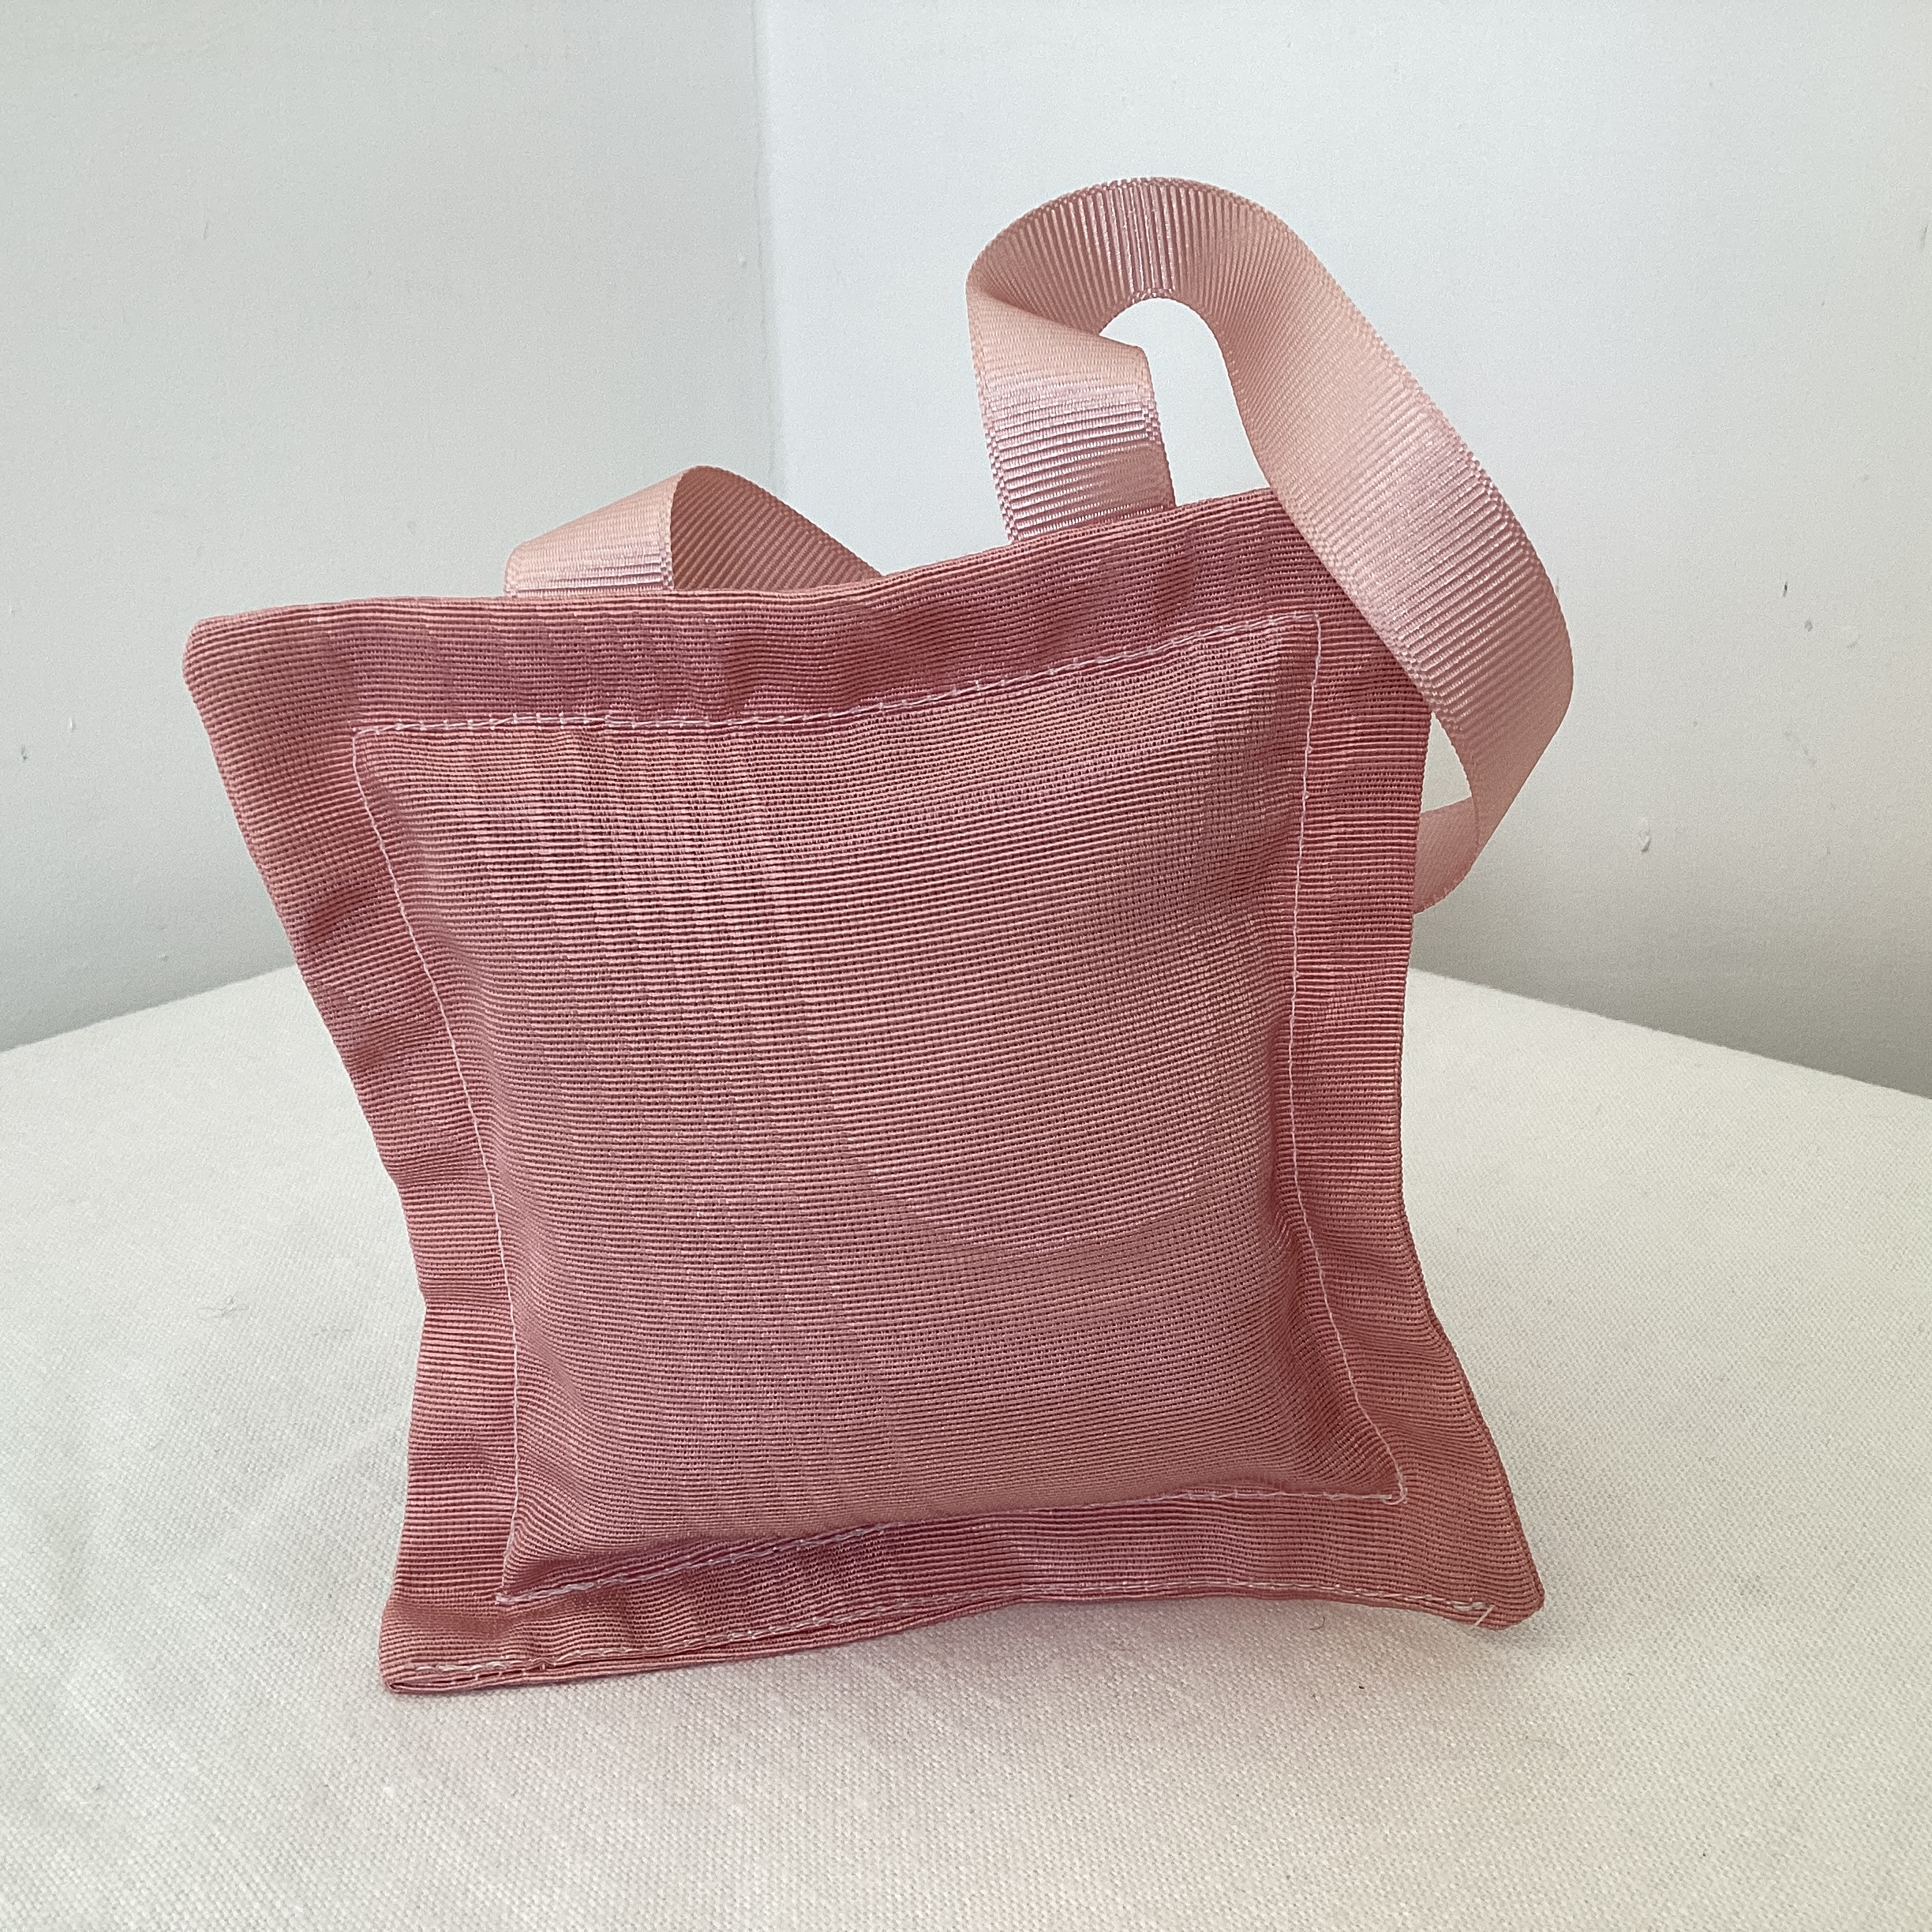 Lavender Bag - dusty pink